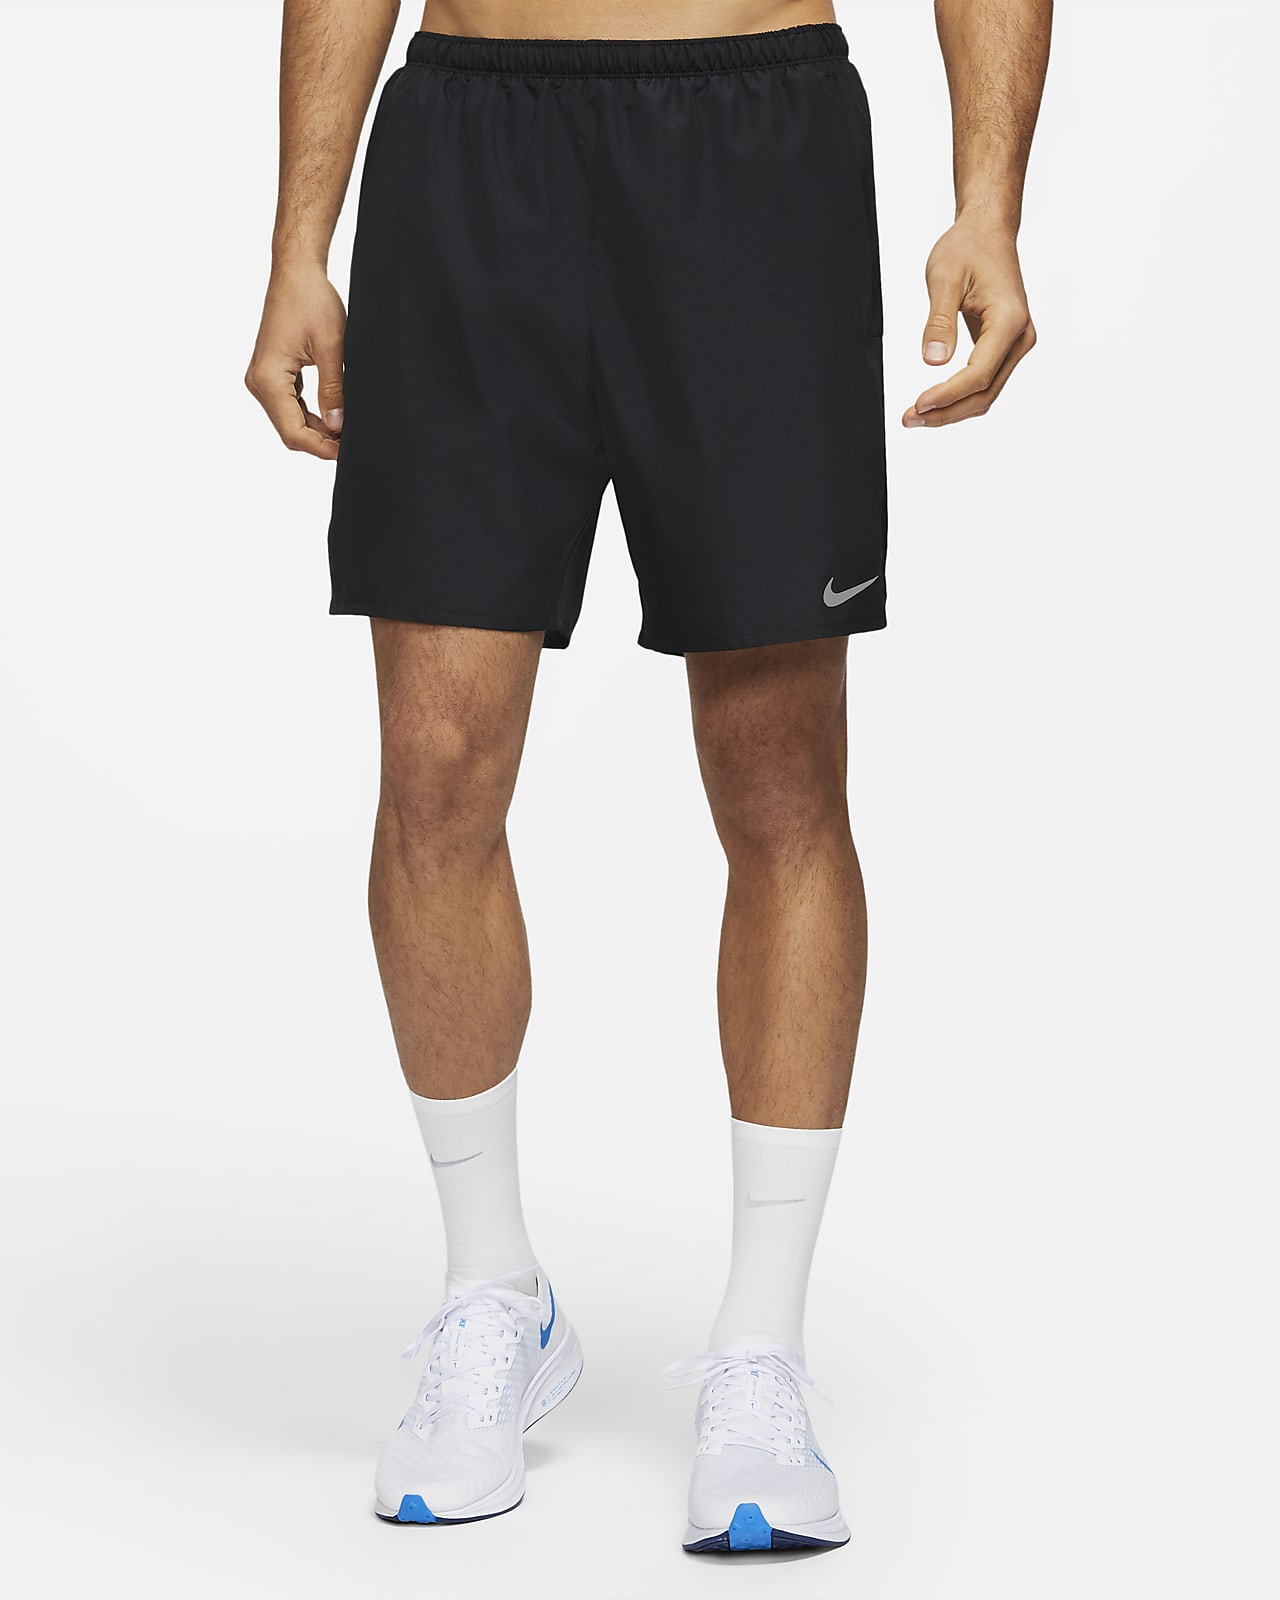 Nike Challenger Pantalón corto de running 2 en 1 - Hombre